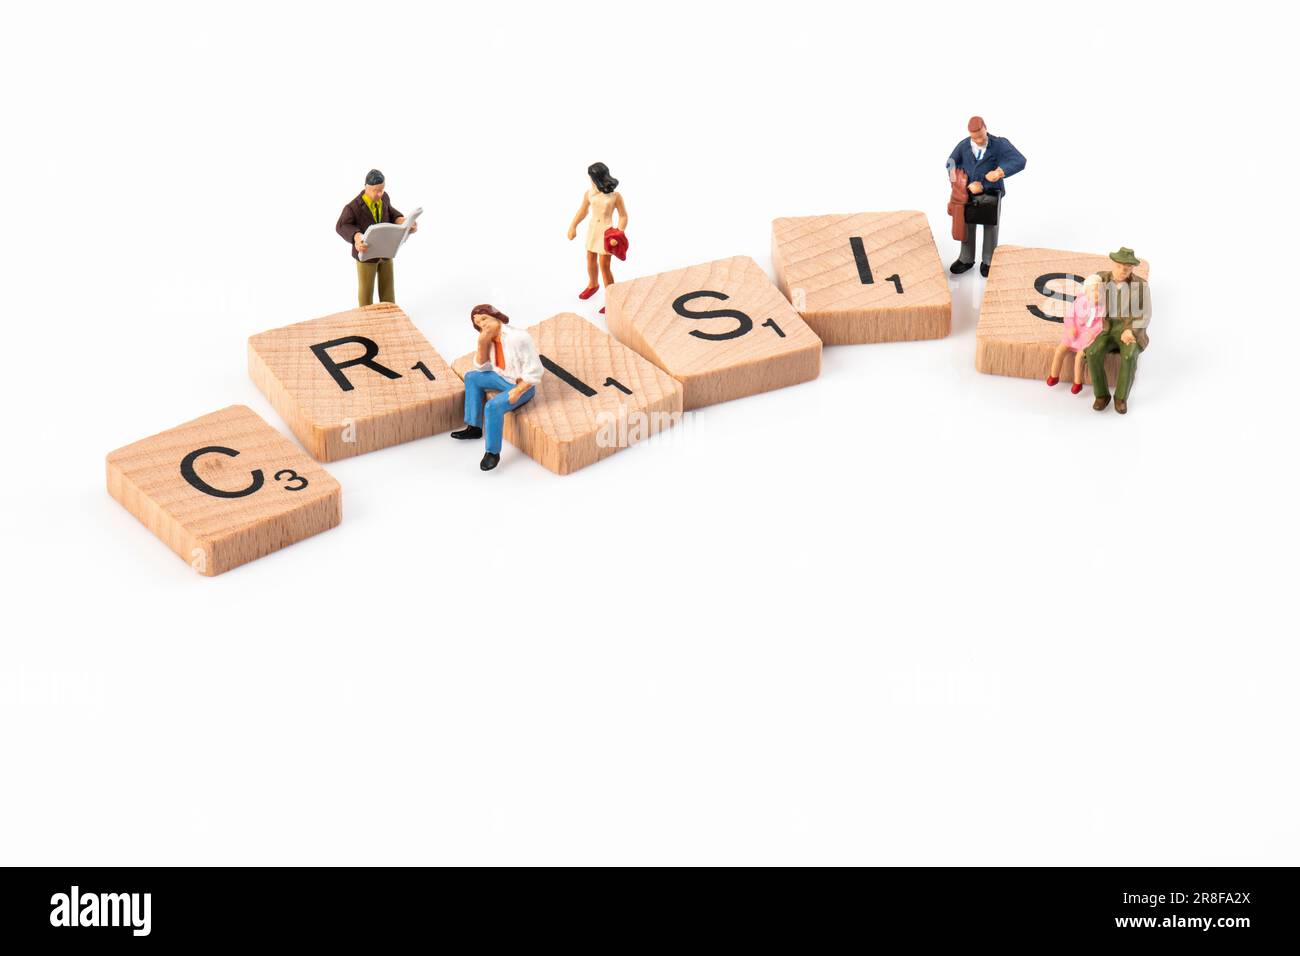 Crisi - lettere in legno Scrabble disposti a incantare 'crisi' circondato da piccole figurine raffiguranti vari gruppi di età. Foto Stock